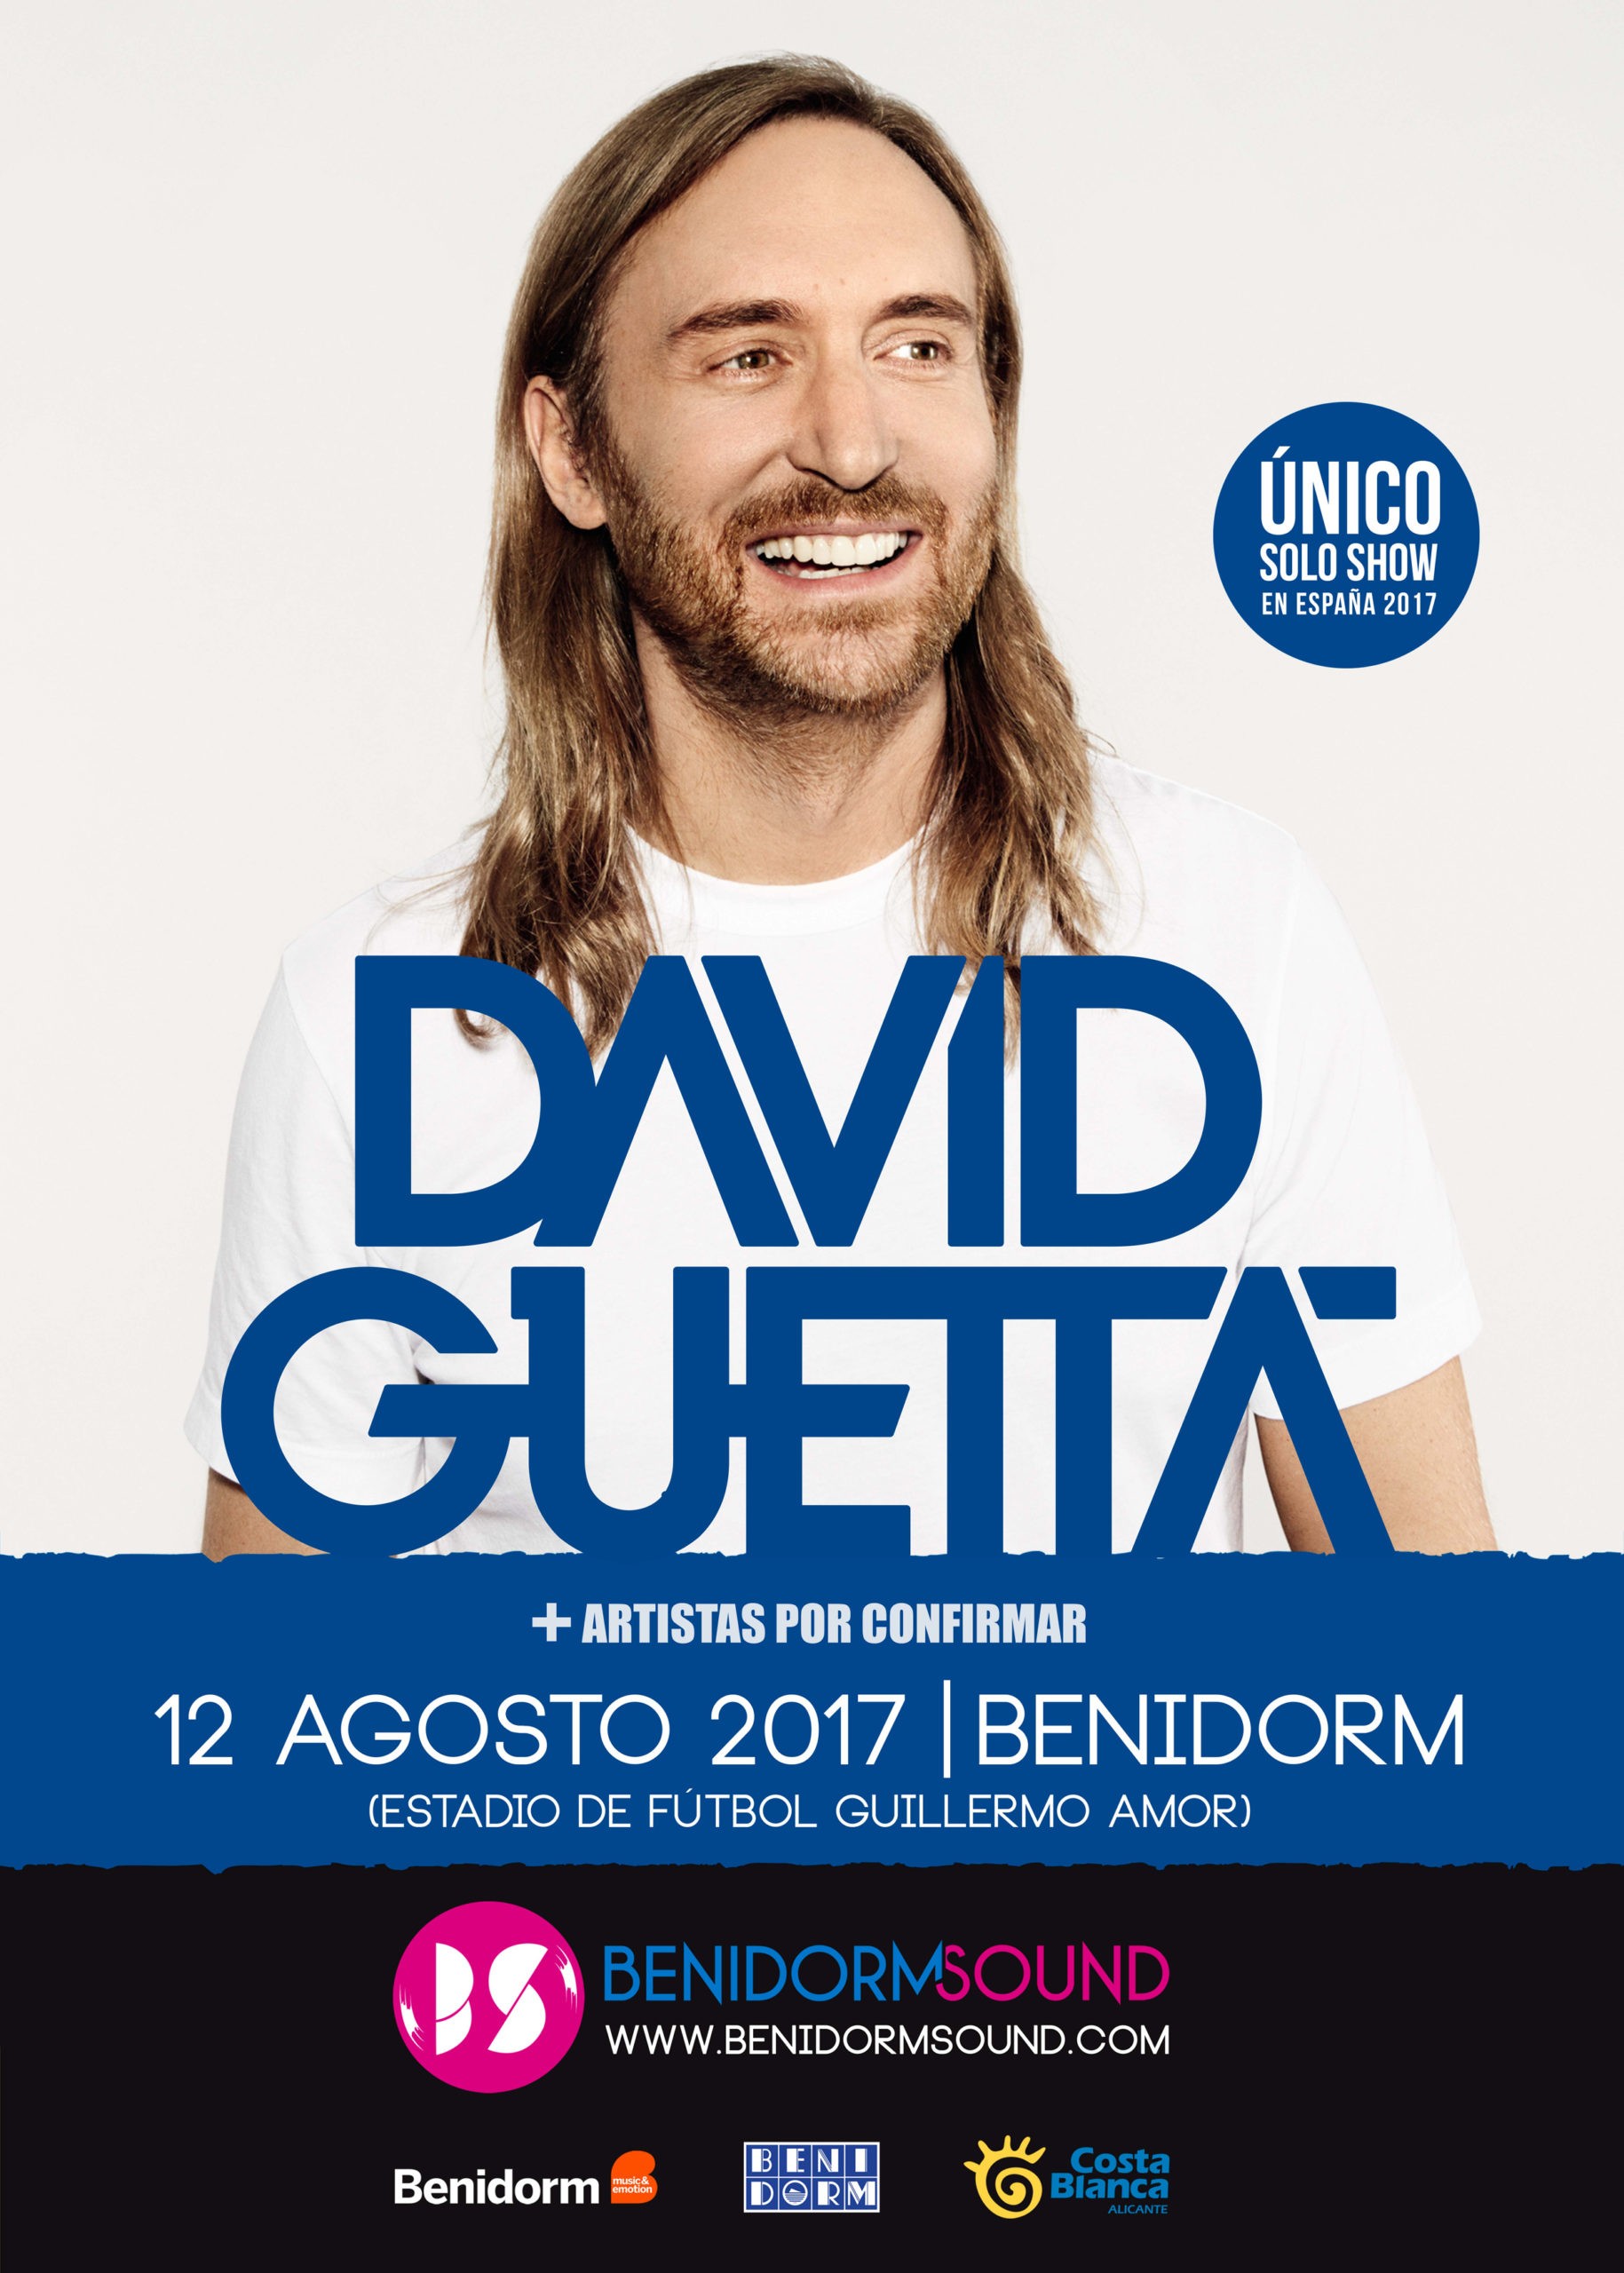 DAVID GUETTA prepara su nuevo Solo Show en Benidorm